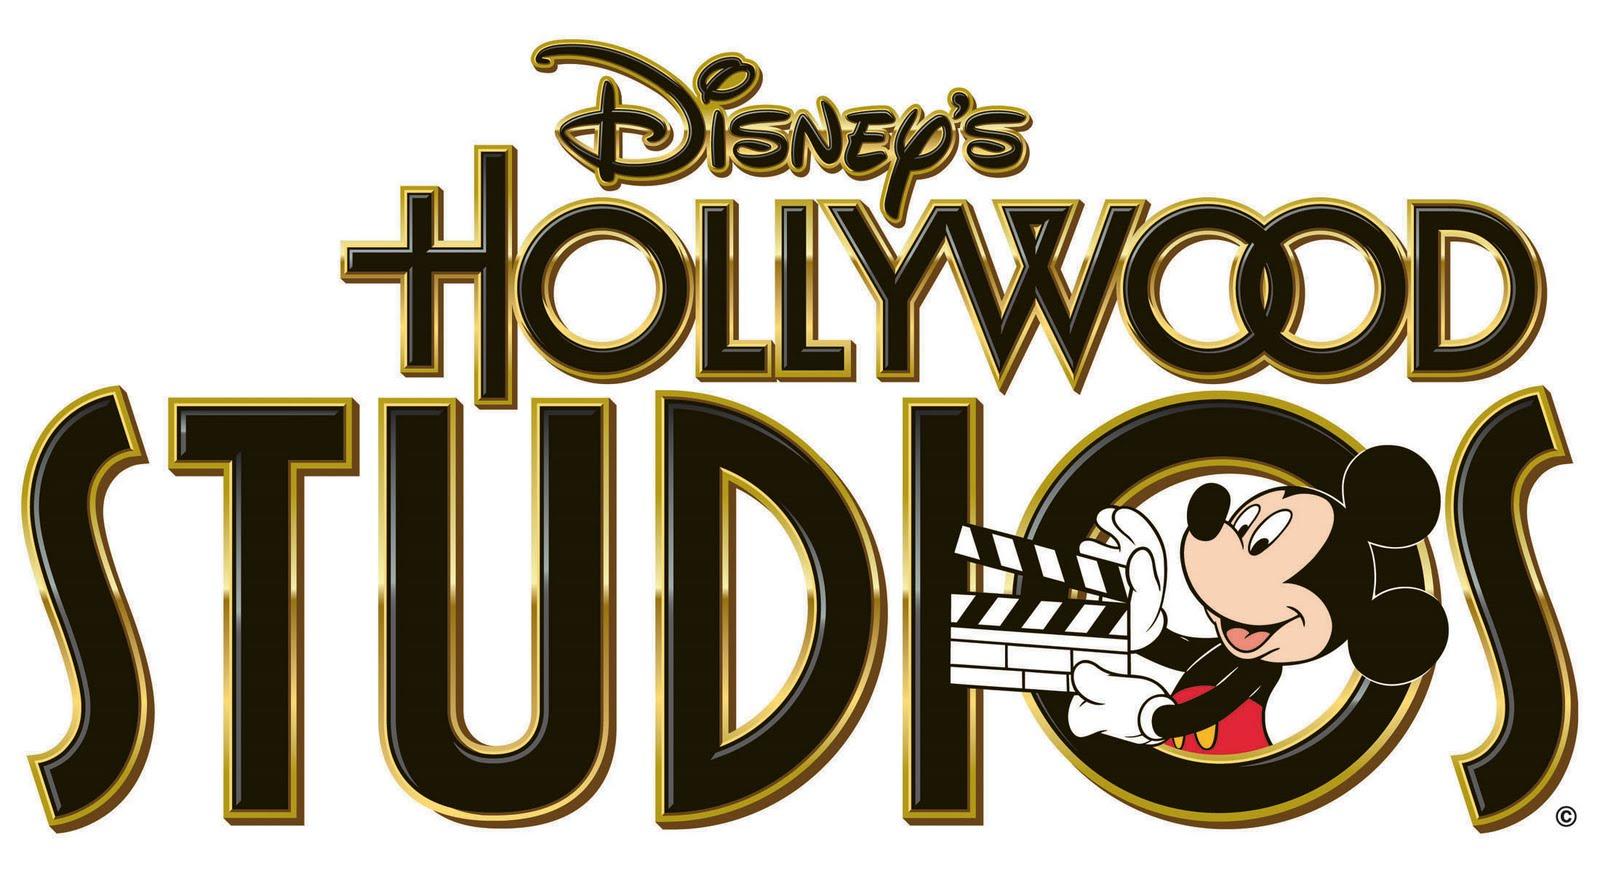 Epcot Logo - Disney World Epcot Logo | Desktop Backgrounds for Free HD Wallpaper ...